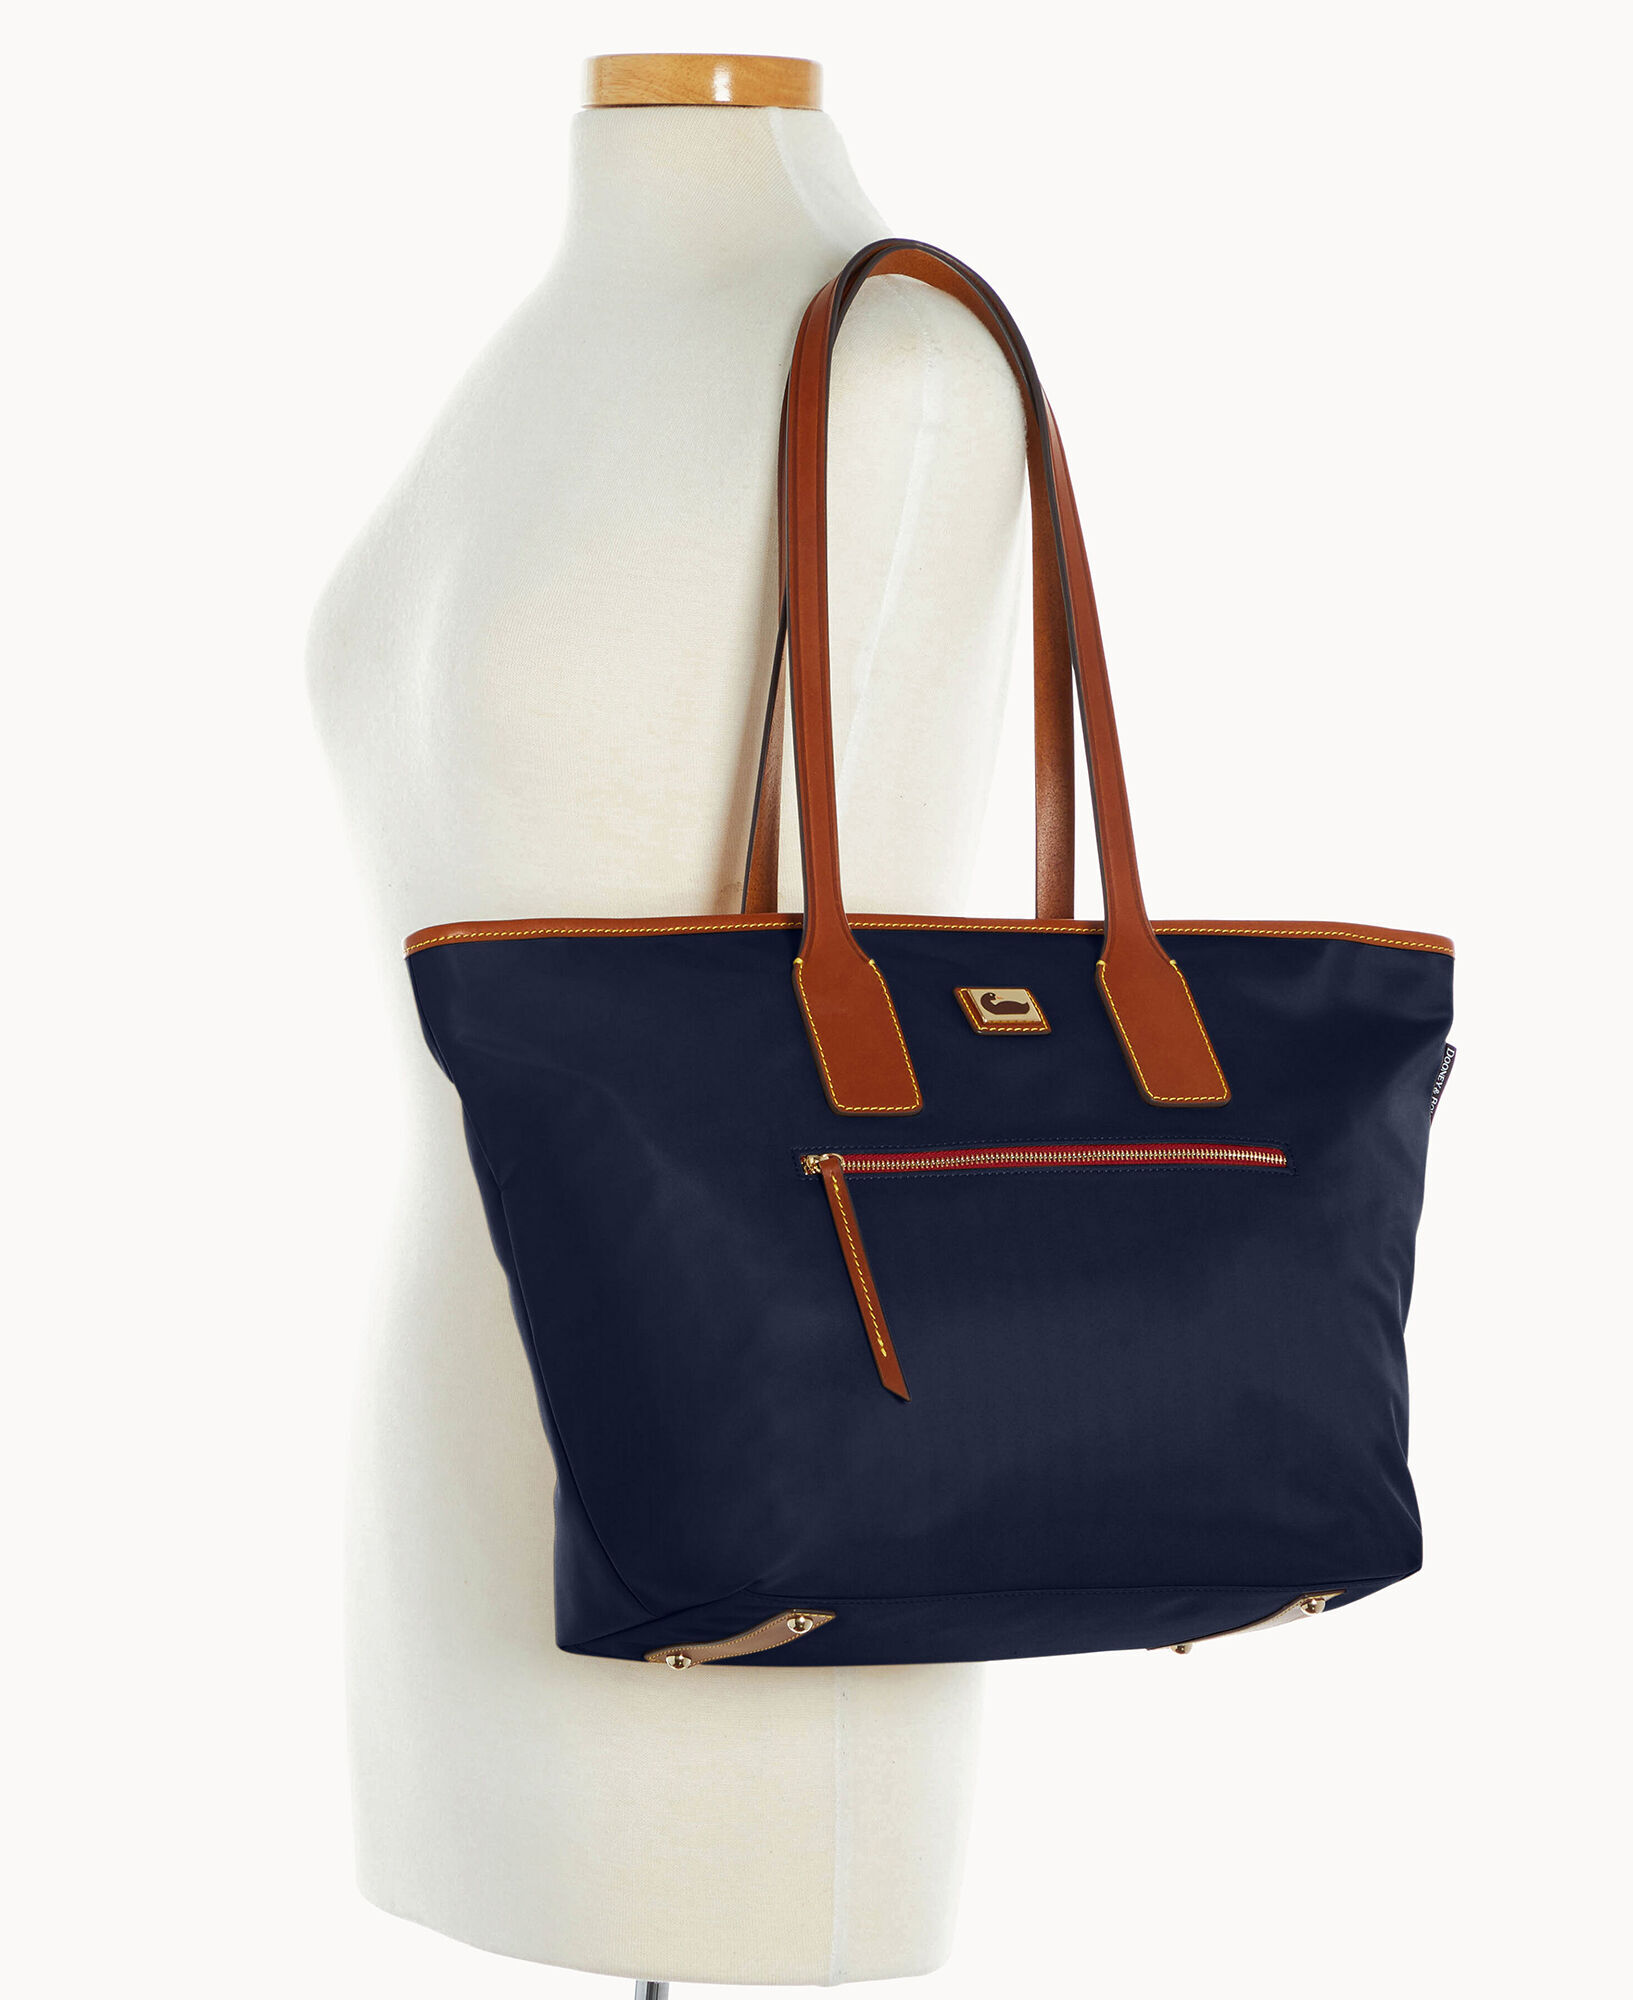 Drop length of Dooney & Bourke All-Weather Handbags